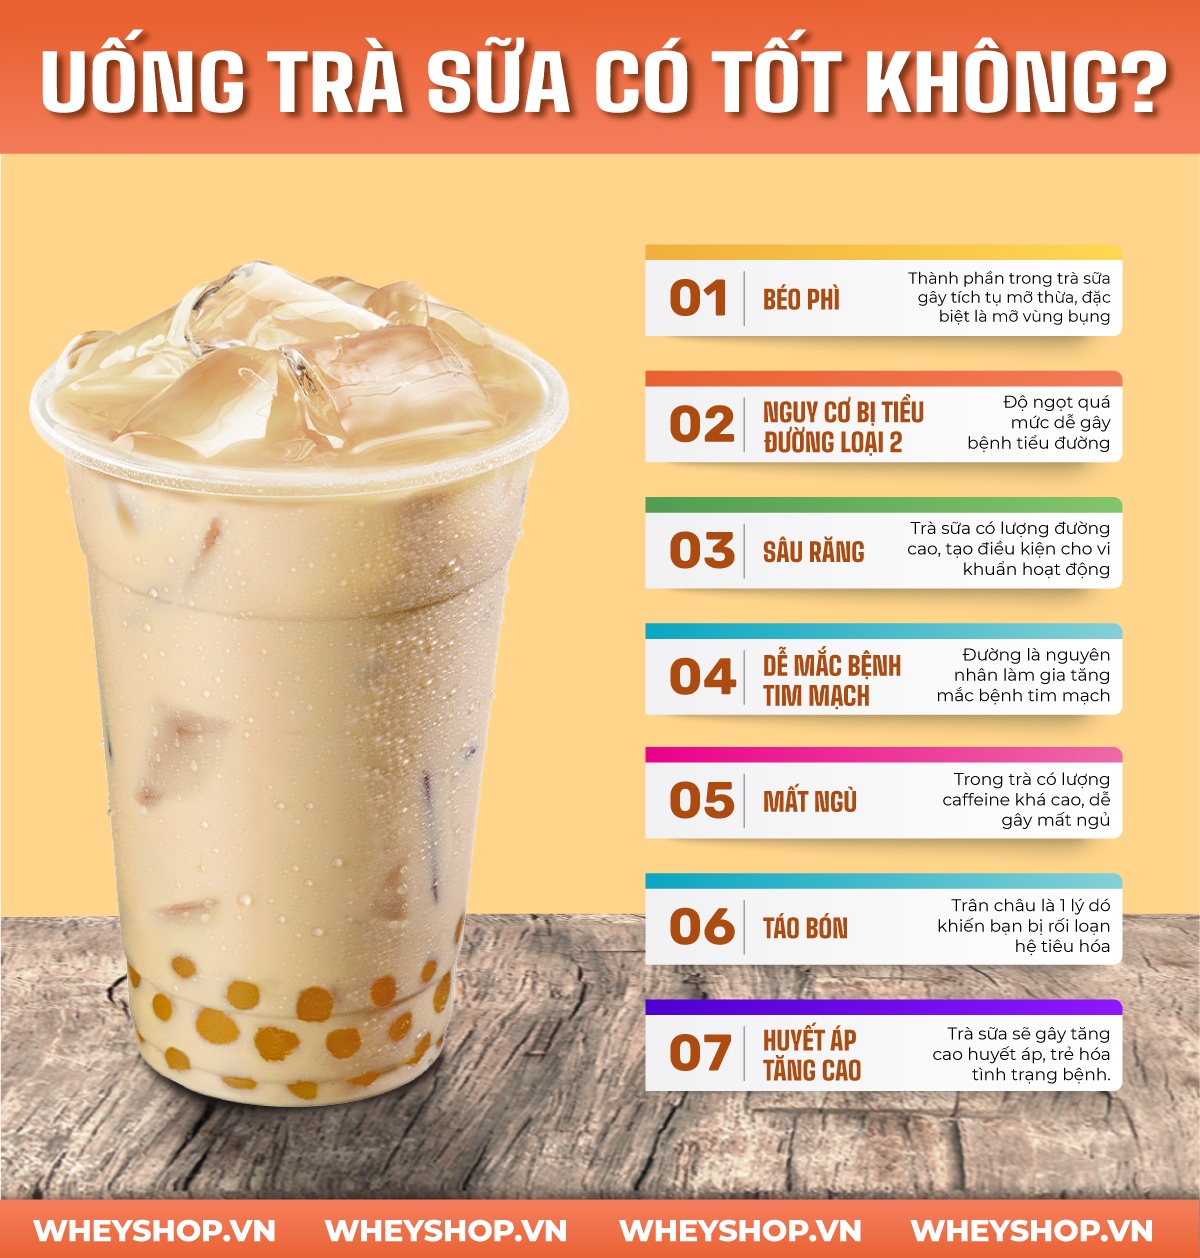 Trà sữa du nhập vào Việt Nam cách đây hơn 10 năm, nhưng độ hot của trà sữa chưa bao giờ giảm. Sự thật uống trà sữa có tốt không? Hãy cùng WheyShop tìm hiểu nhé!